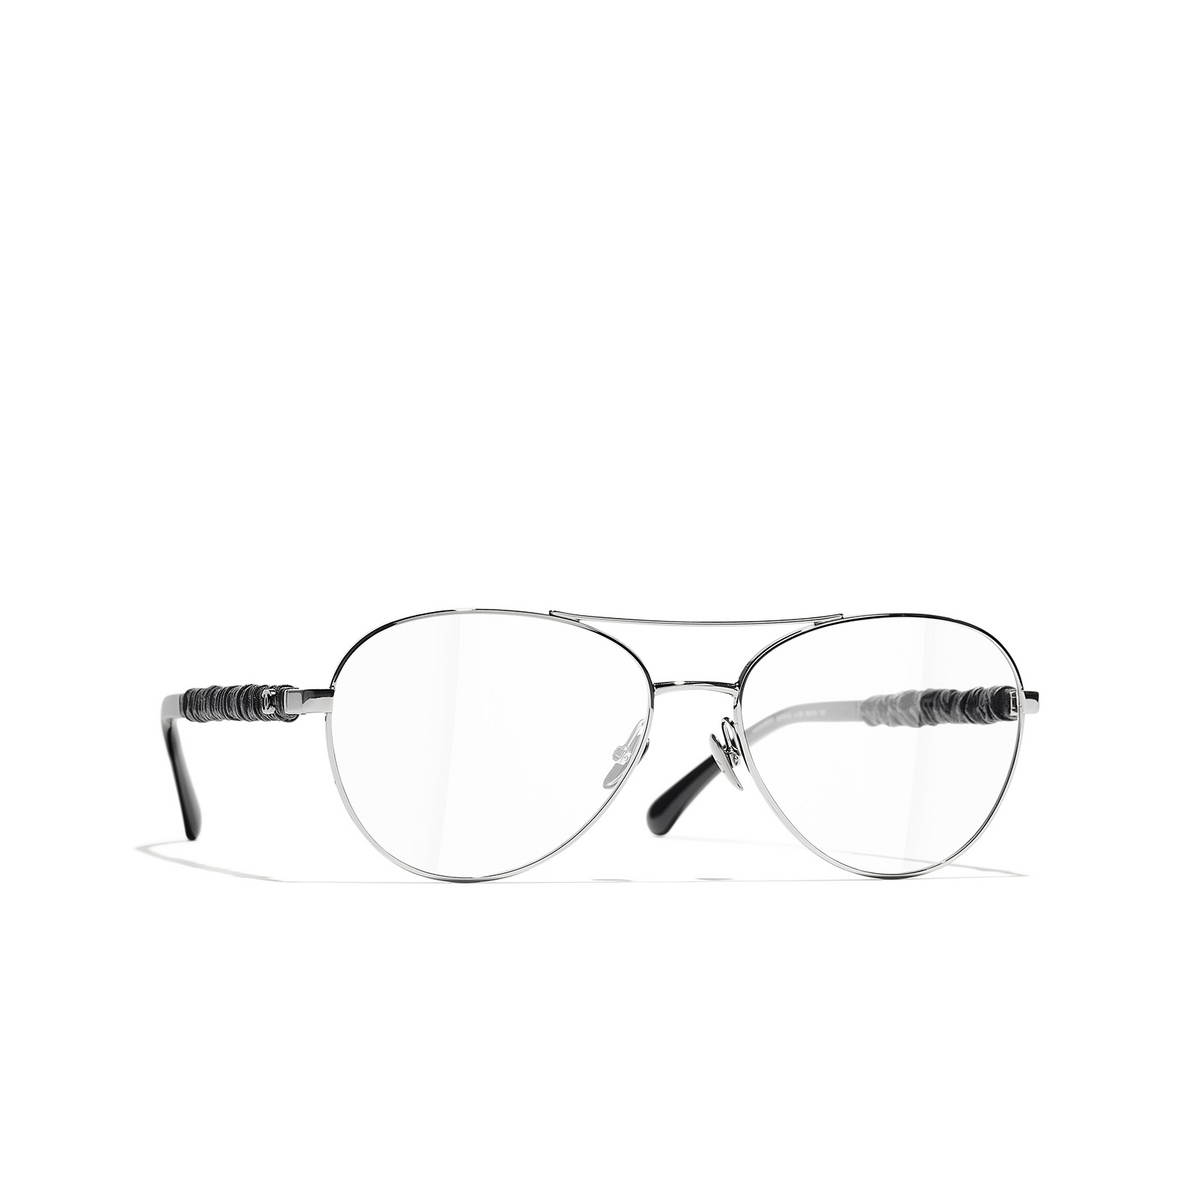 CHANEL pilot Eyeglasses C108 Dark Silver & Black - three-quarters view